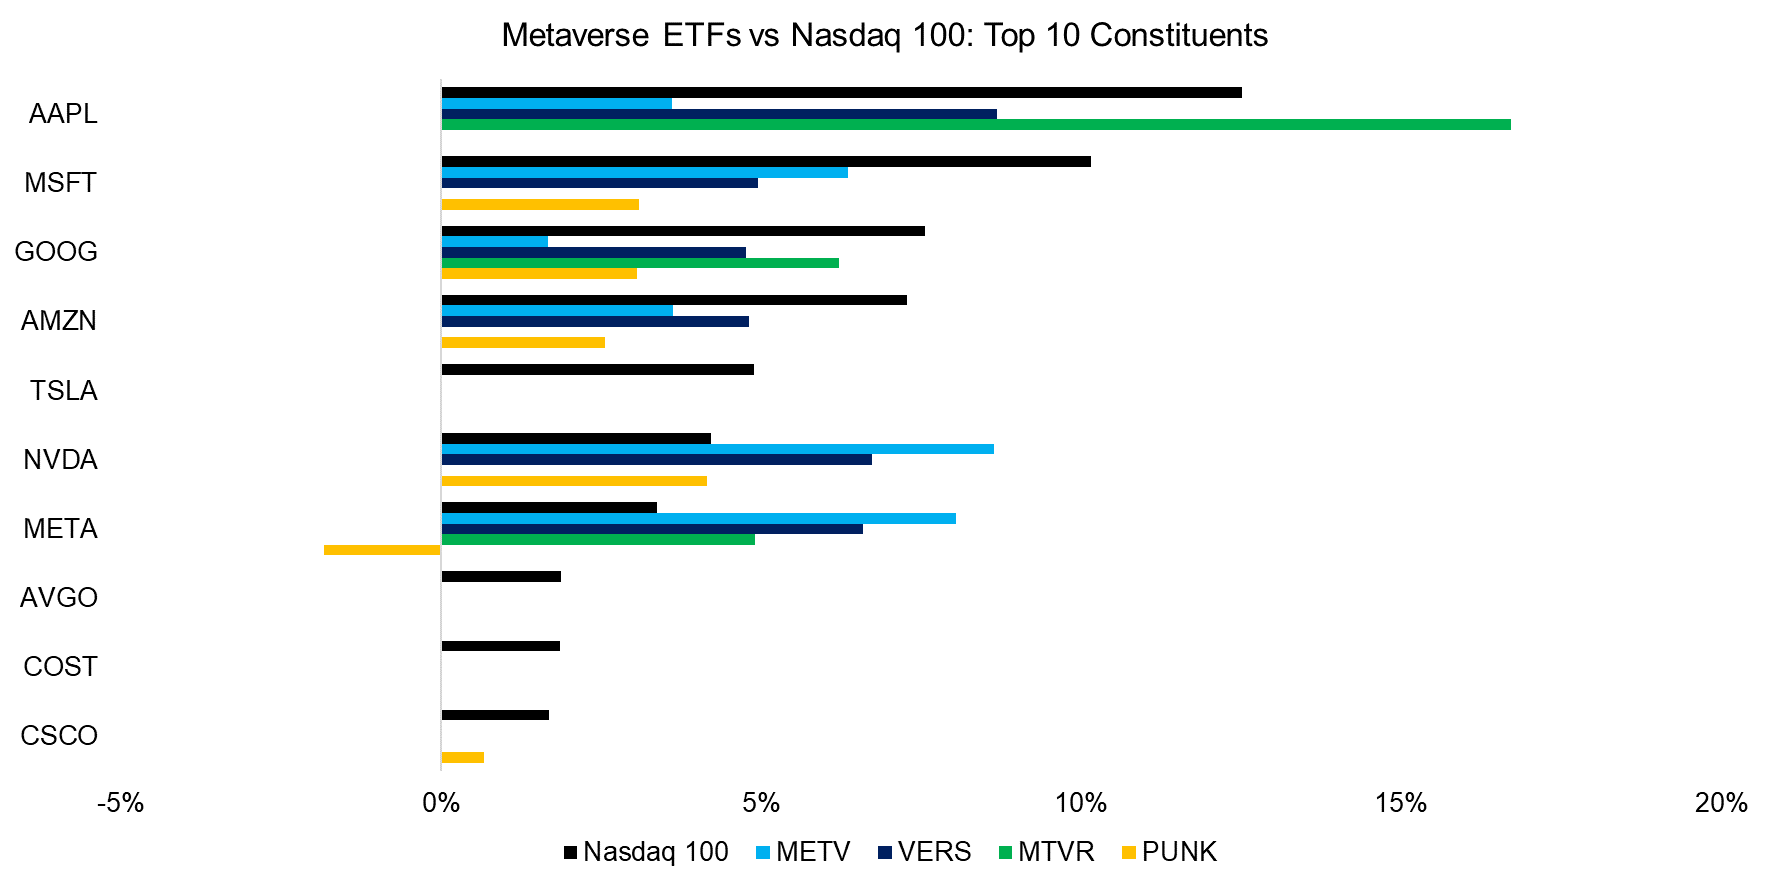 Metaverse ETFs vs Nasdaq 100 Top 10 Constituents